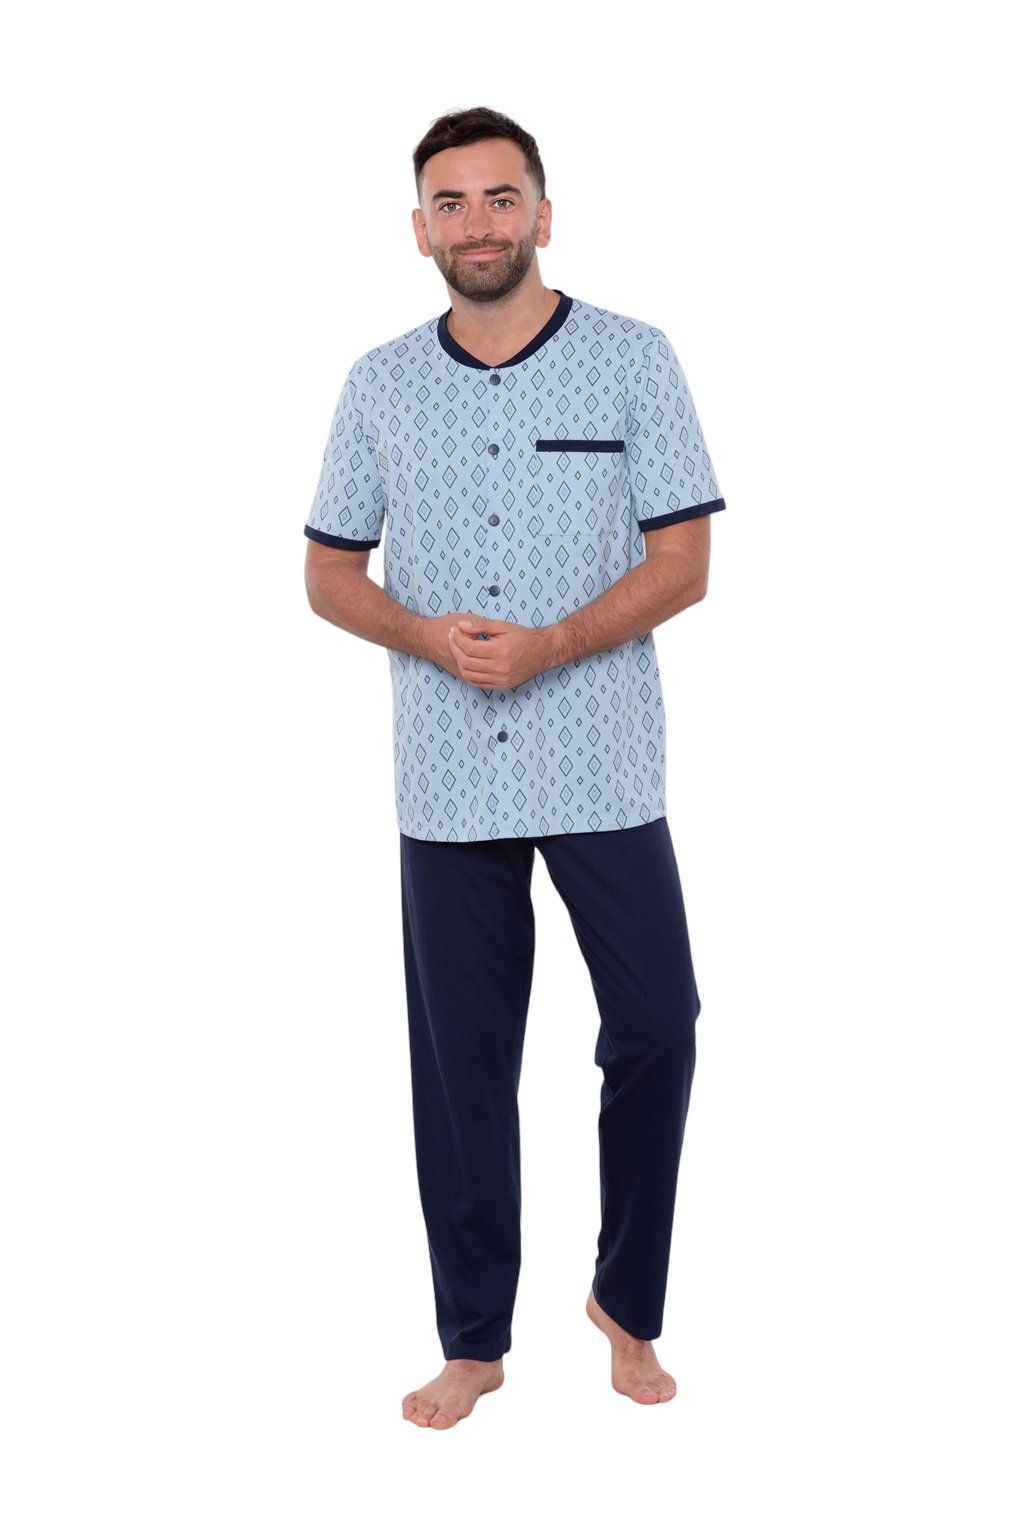 Pánské pyžamo s krátkým rukávem a dlouhými nohavicemi, 204122 477, modrá - Velikost L Wadima